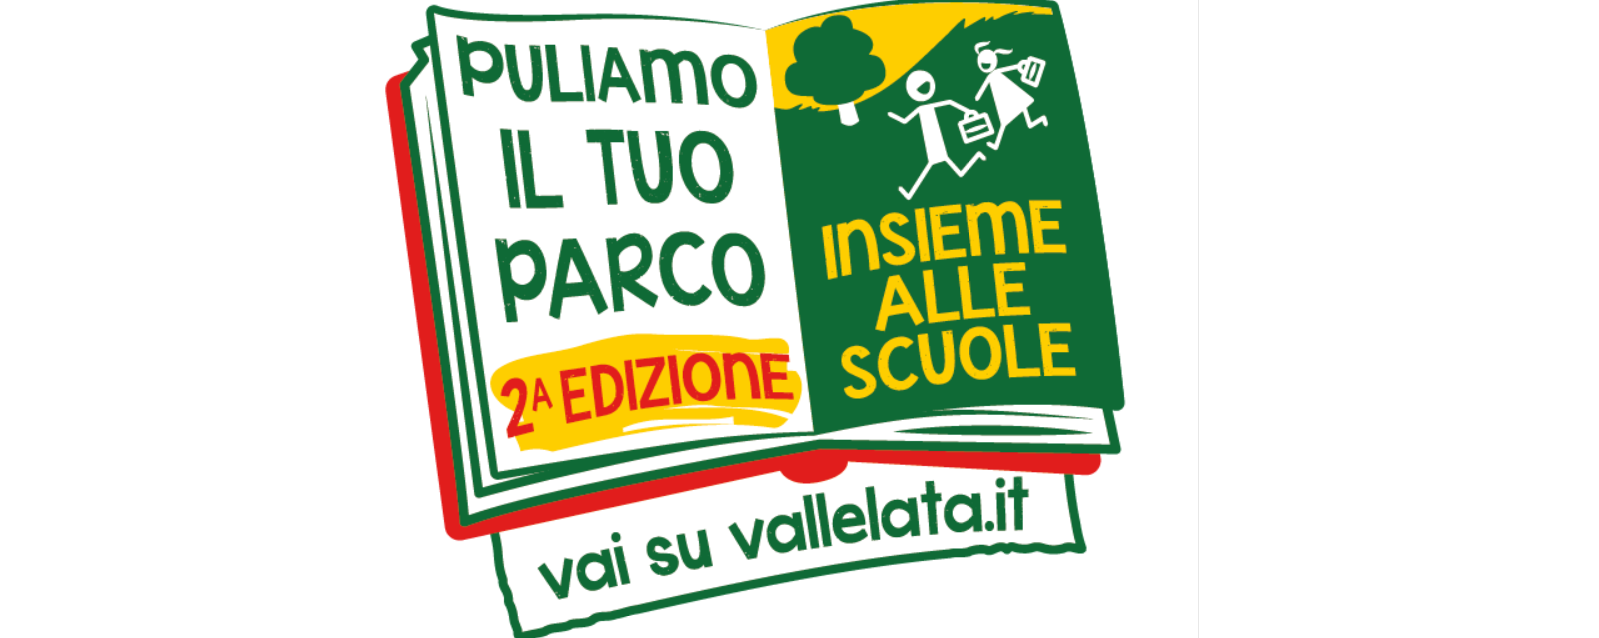 Puliamo il tuo parco: Vallelata e Legambiente ancora insieme in Basilicata per tutelare il verde cittadino e sensibilizzare le giovani generazioni al rispetto dell’ambiente